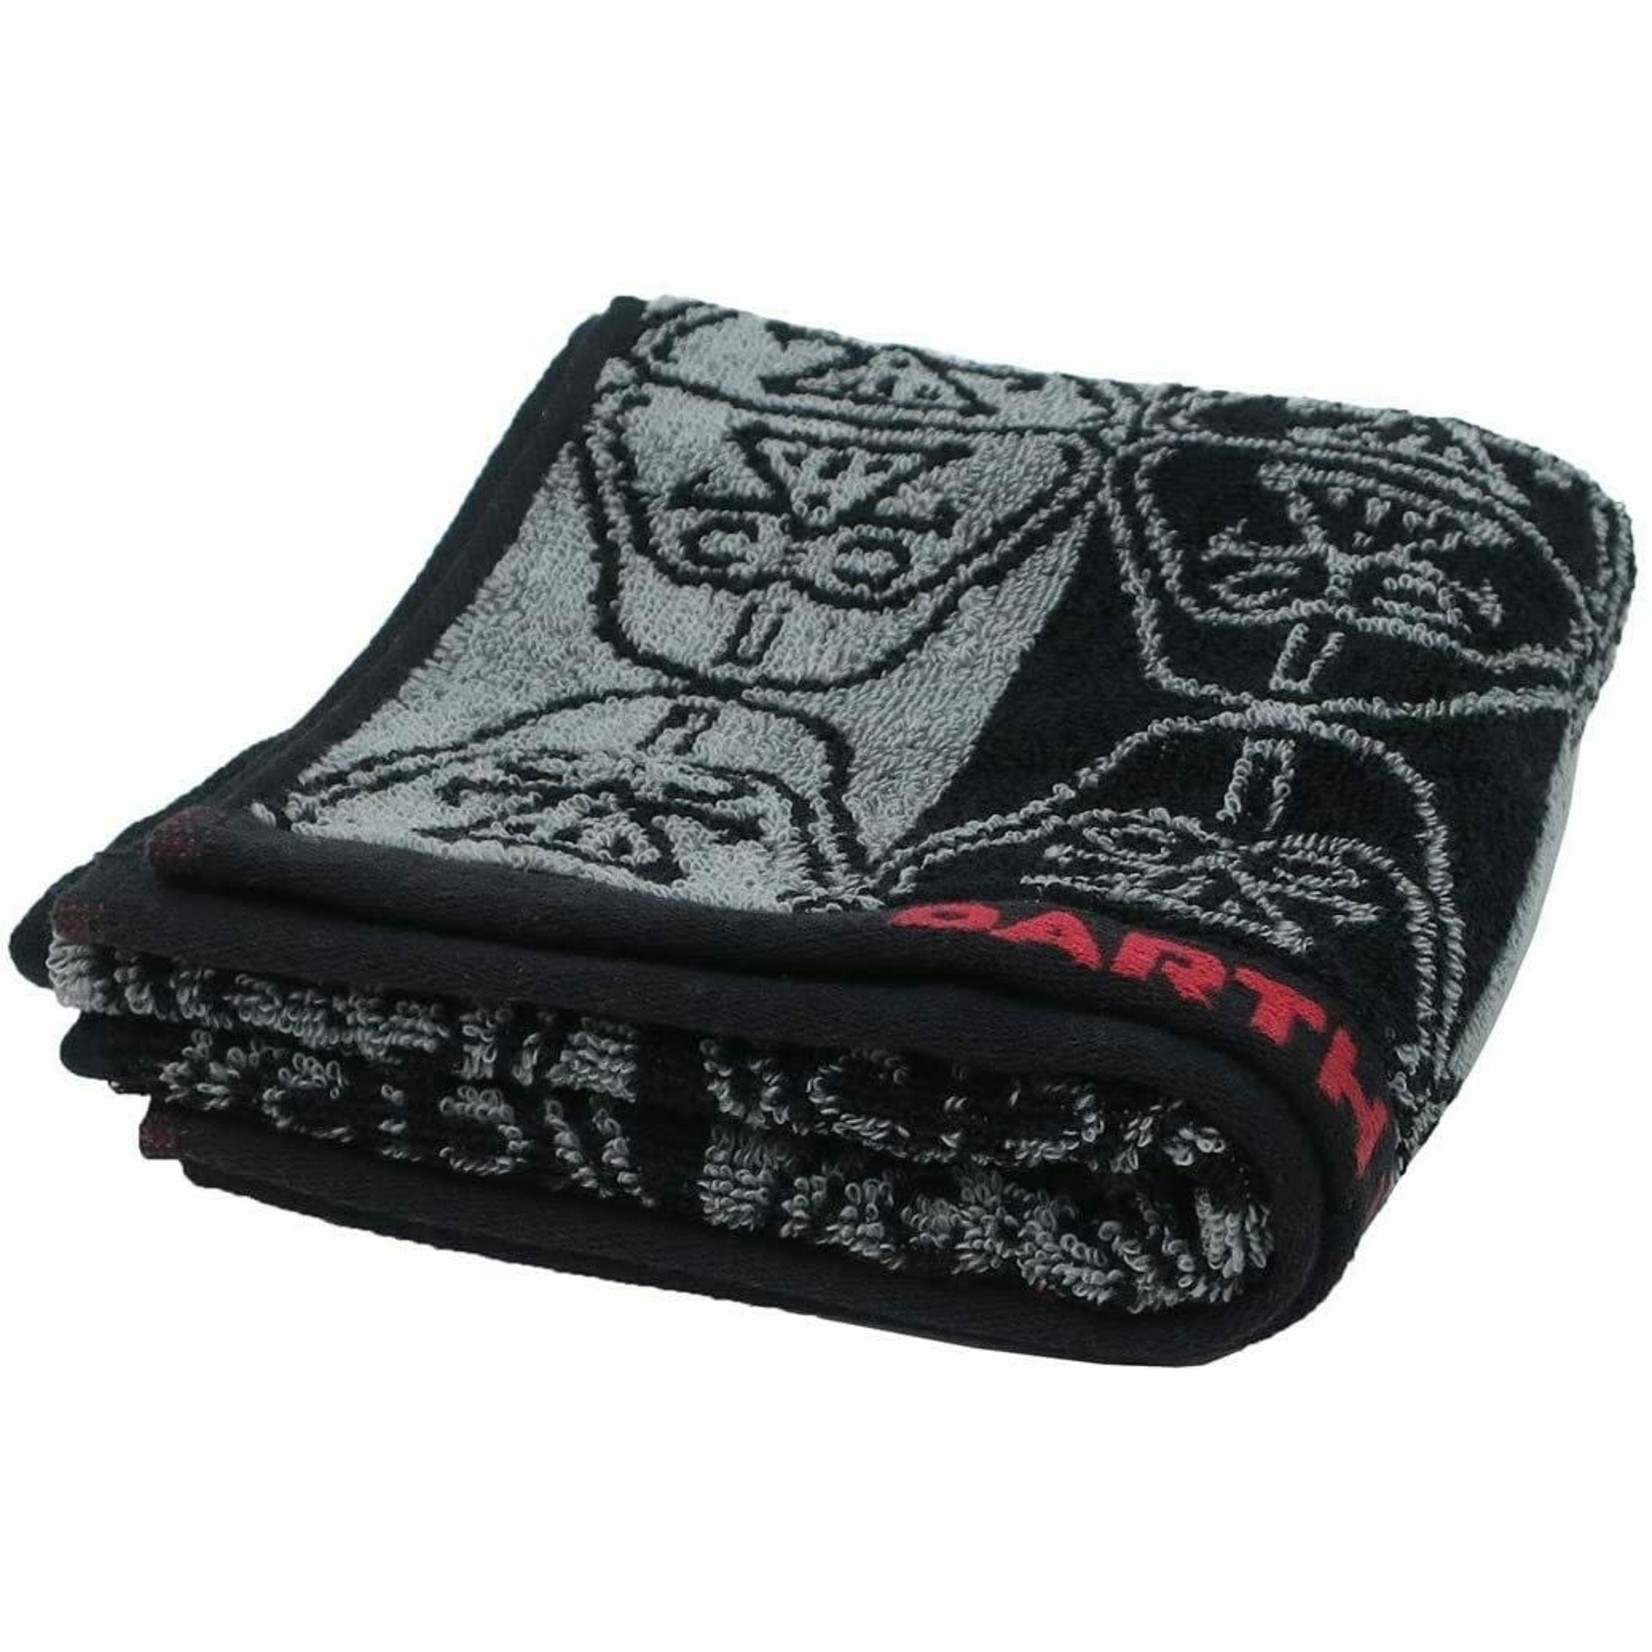 Star Wars - Darth Vader Face Towel